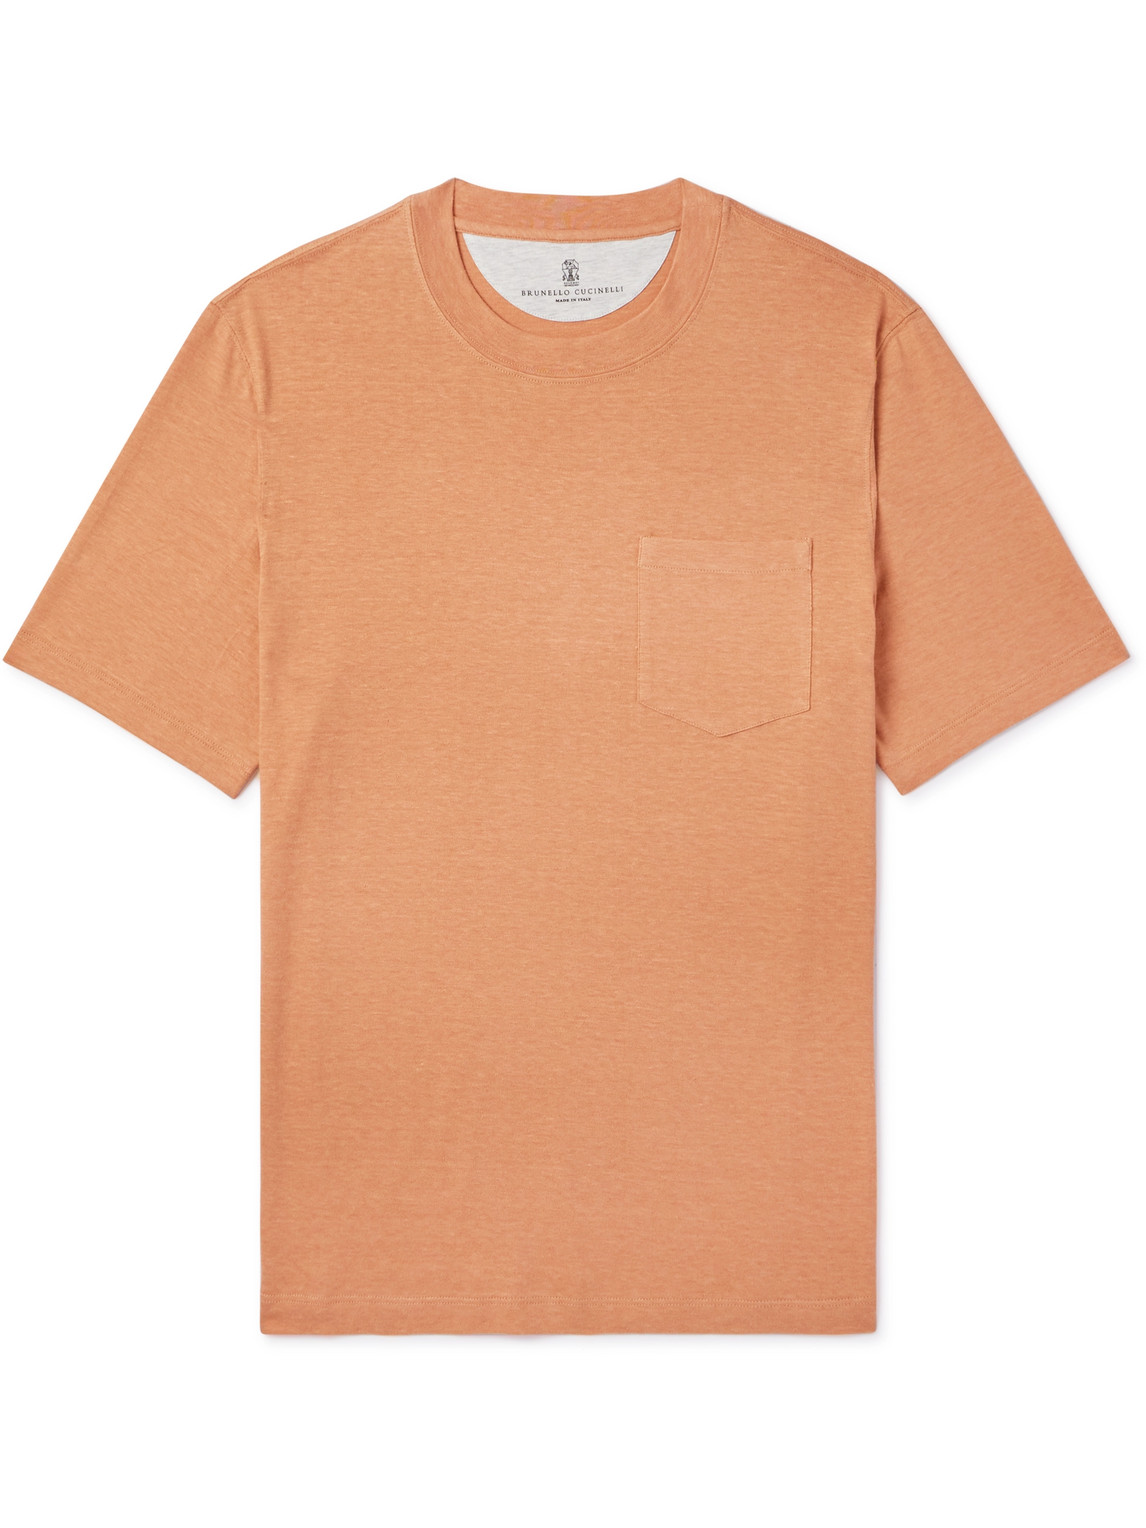 Brunello Cucinelli - Linen and Cotton-Blend Jersey T-Shirt - Men - Orange - XXL von Brunello Cucinelli